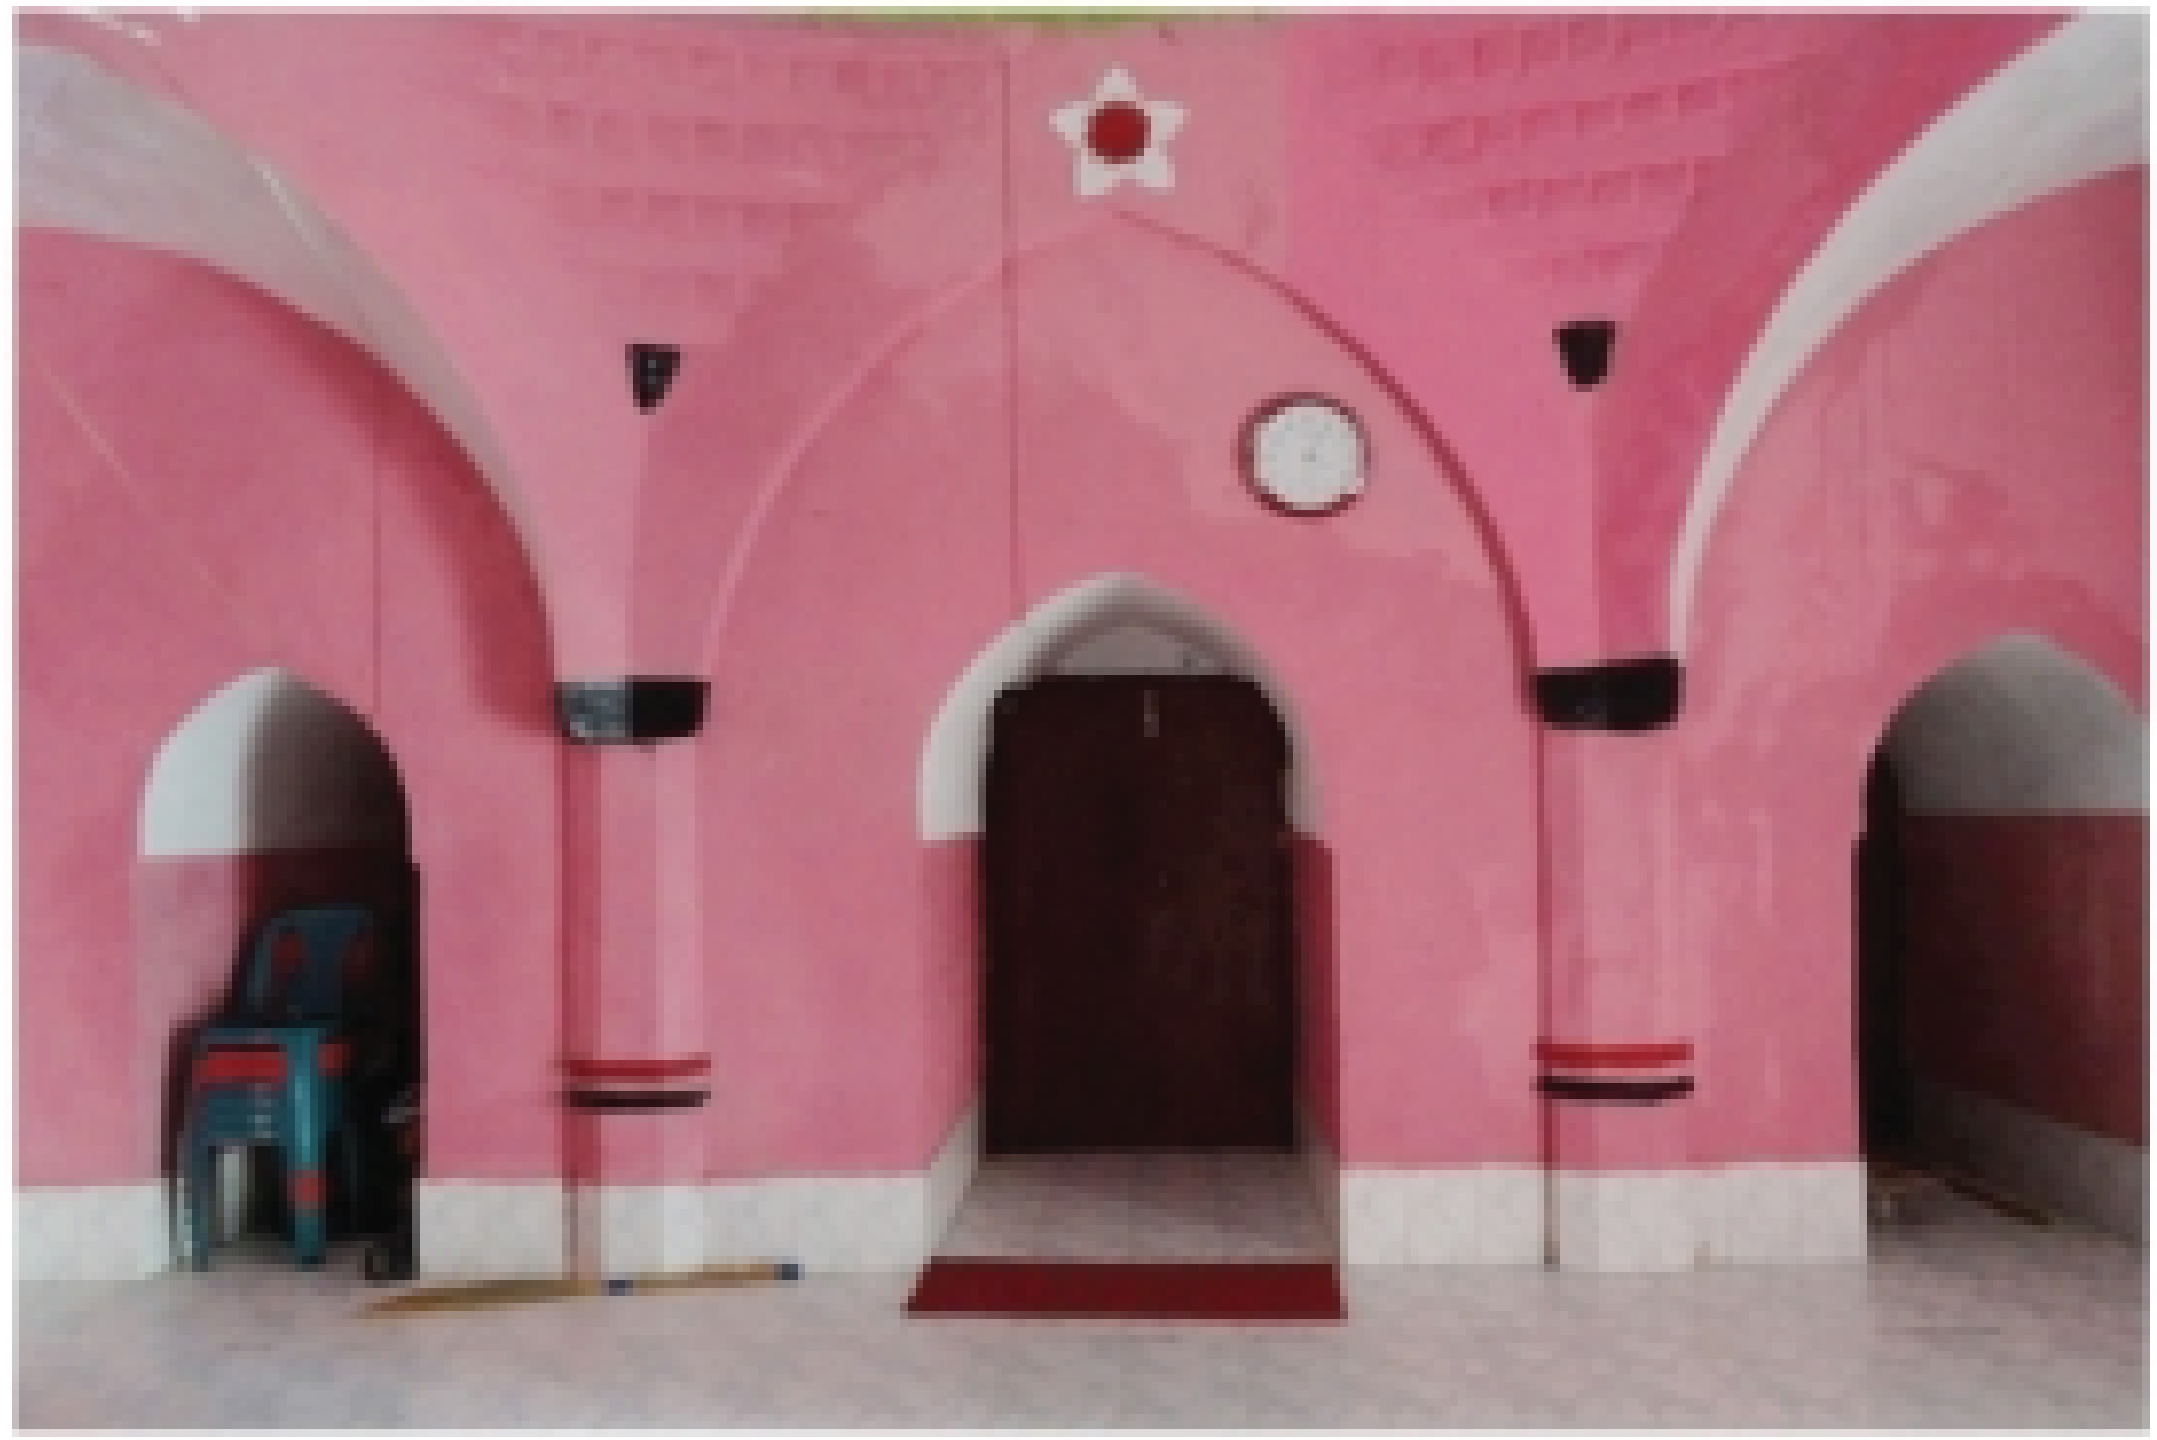 স্থাপত্যের এক অন্যতম নিদর্শন সিরাজগঞ্জের ঐতিহাসিক নবগ্রাম এক গম্বুজ মসজিদ